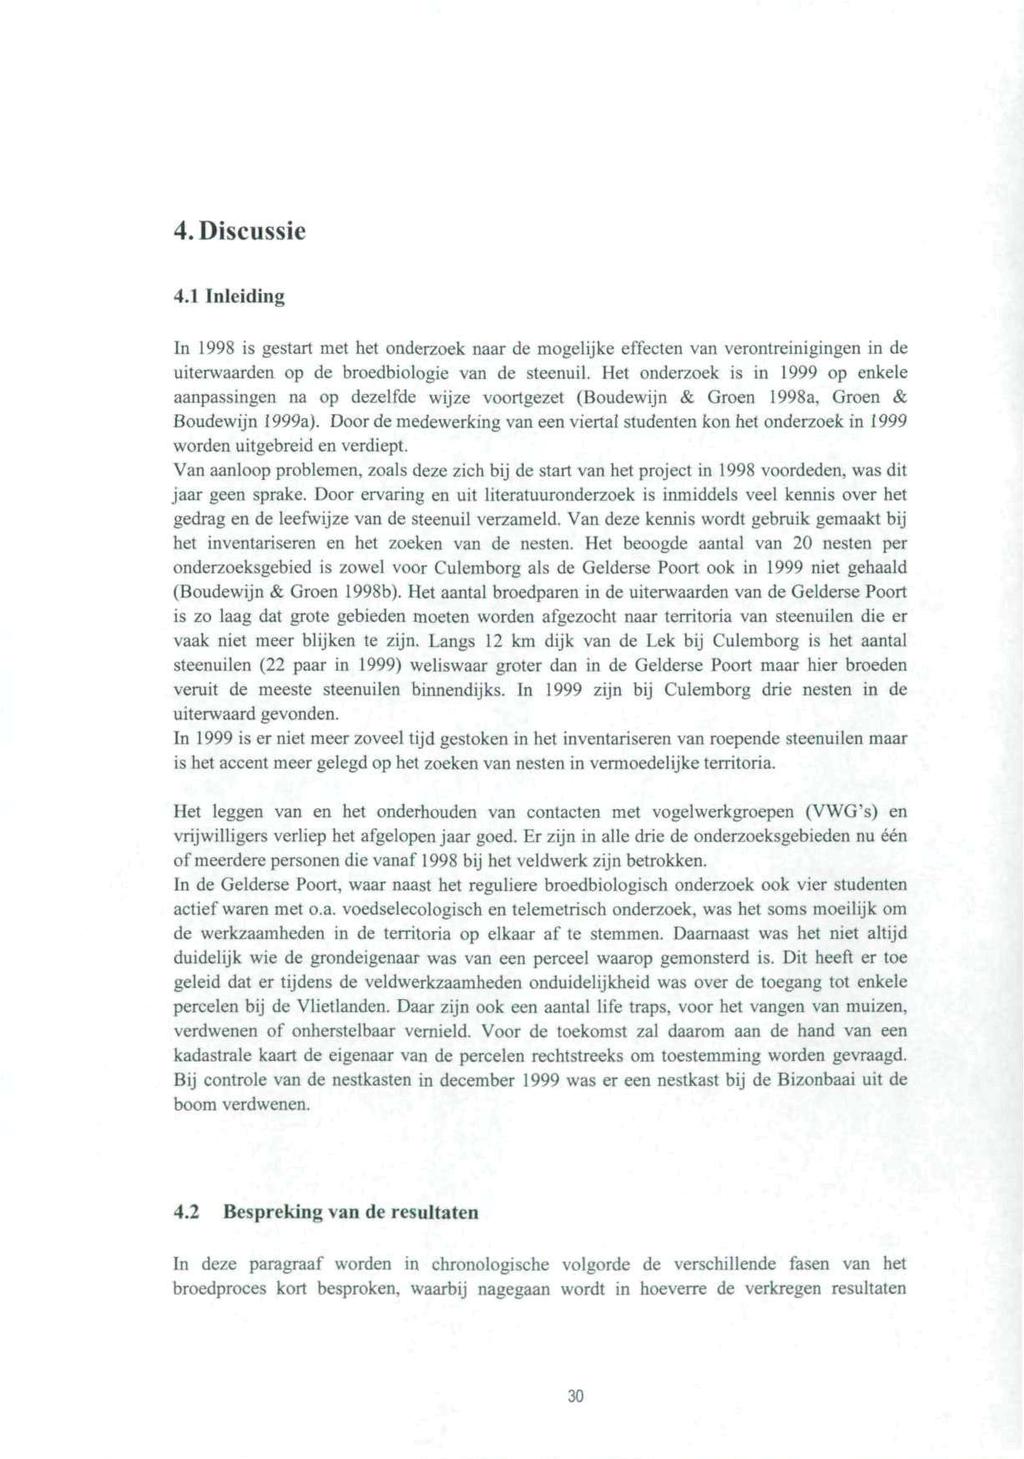 4. Diseussie 4.1 Inleiding In 1998 is gestart met het onderzoek naar de mogelijke effecten van verontreinigingen in de uiterwaarden op de broedbiologie van de steenuil.